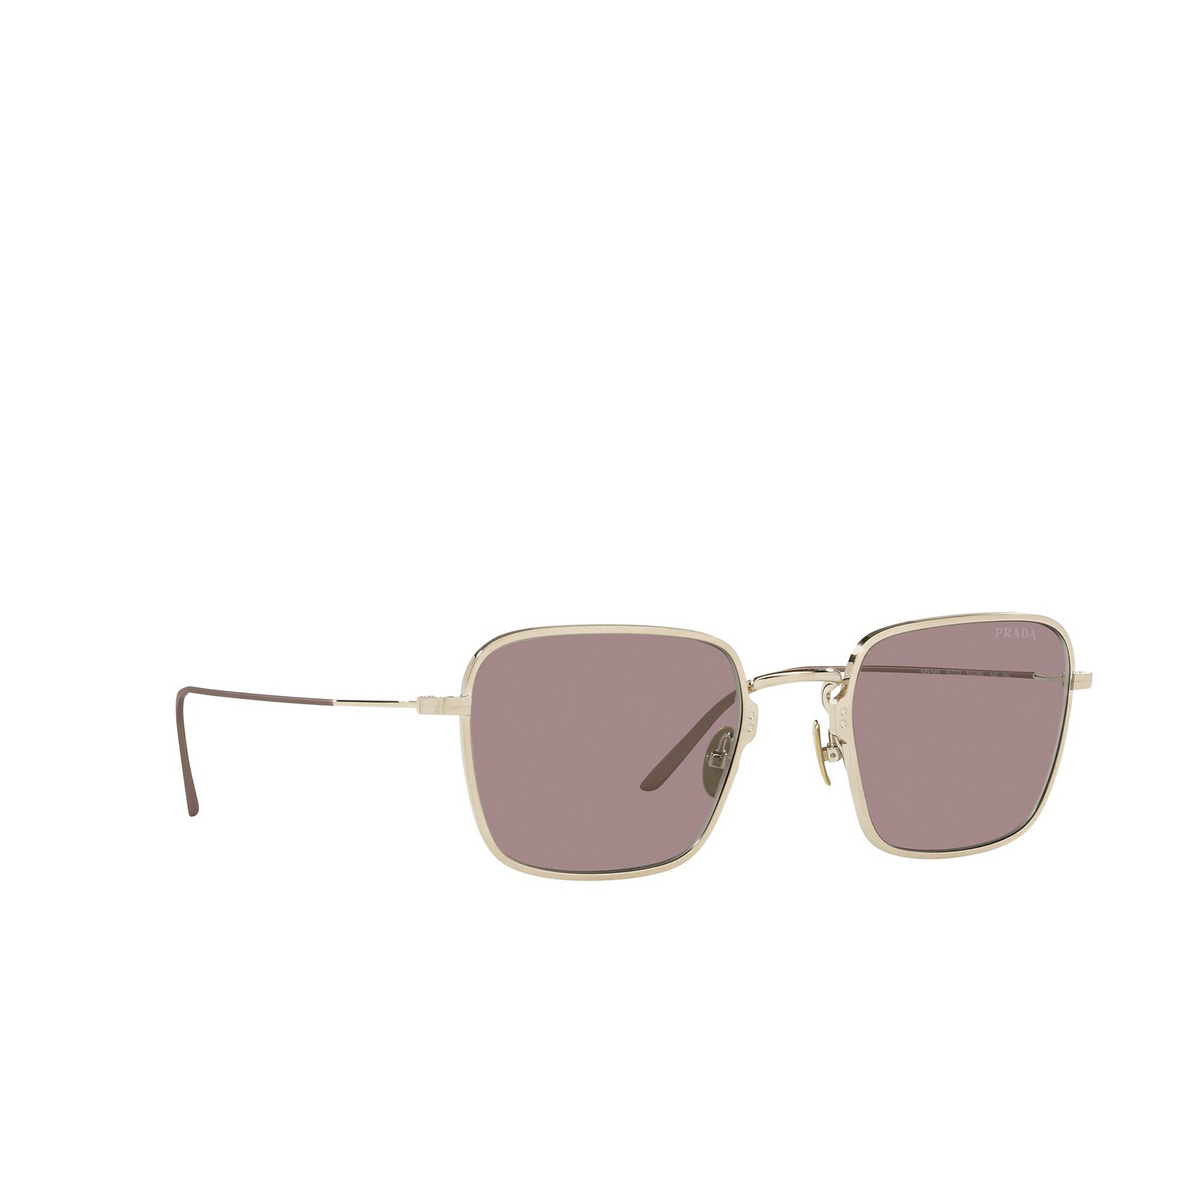 Prada® Square Sunglasses: PR 54WS color Pale Gold 06Q06I - three-quarters view.